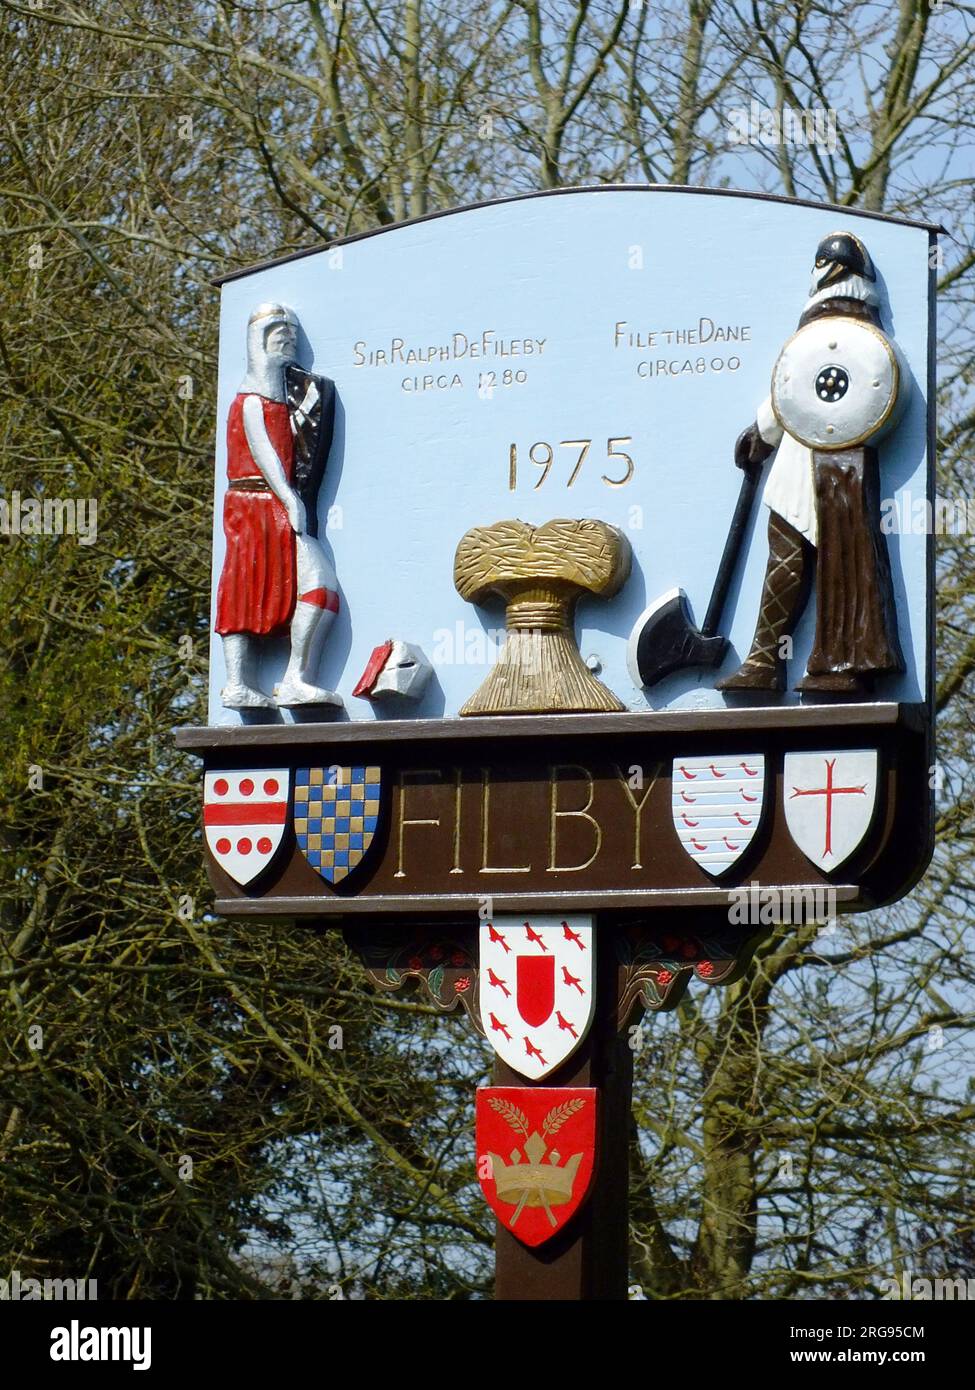 Cartello del villaggio per Filby, vicino a Great Yarmouth, Norfolk, datato 1975, raffigurante due figure storiche: File the Dane, che si stabilì nell'area intorno all'anno 800, e Sir Ralph de Fileby, che visse nell'area intorno al 1280. Foto Stock